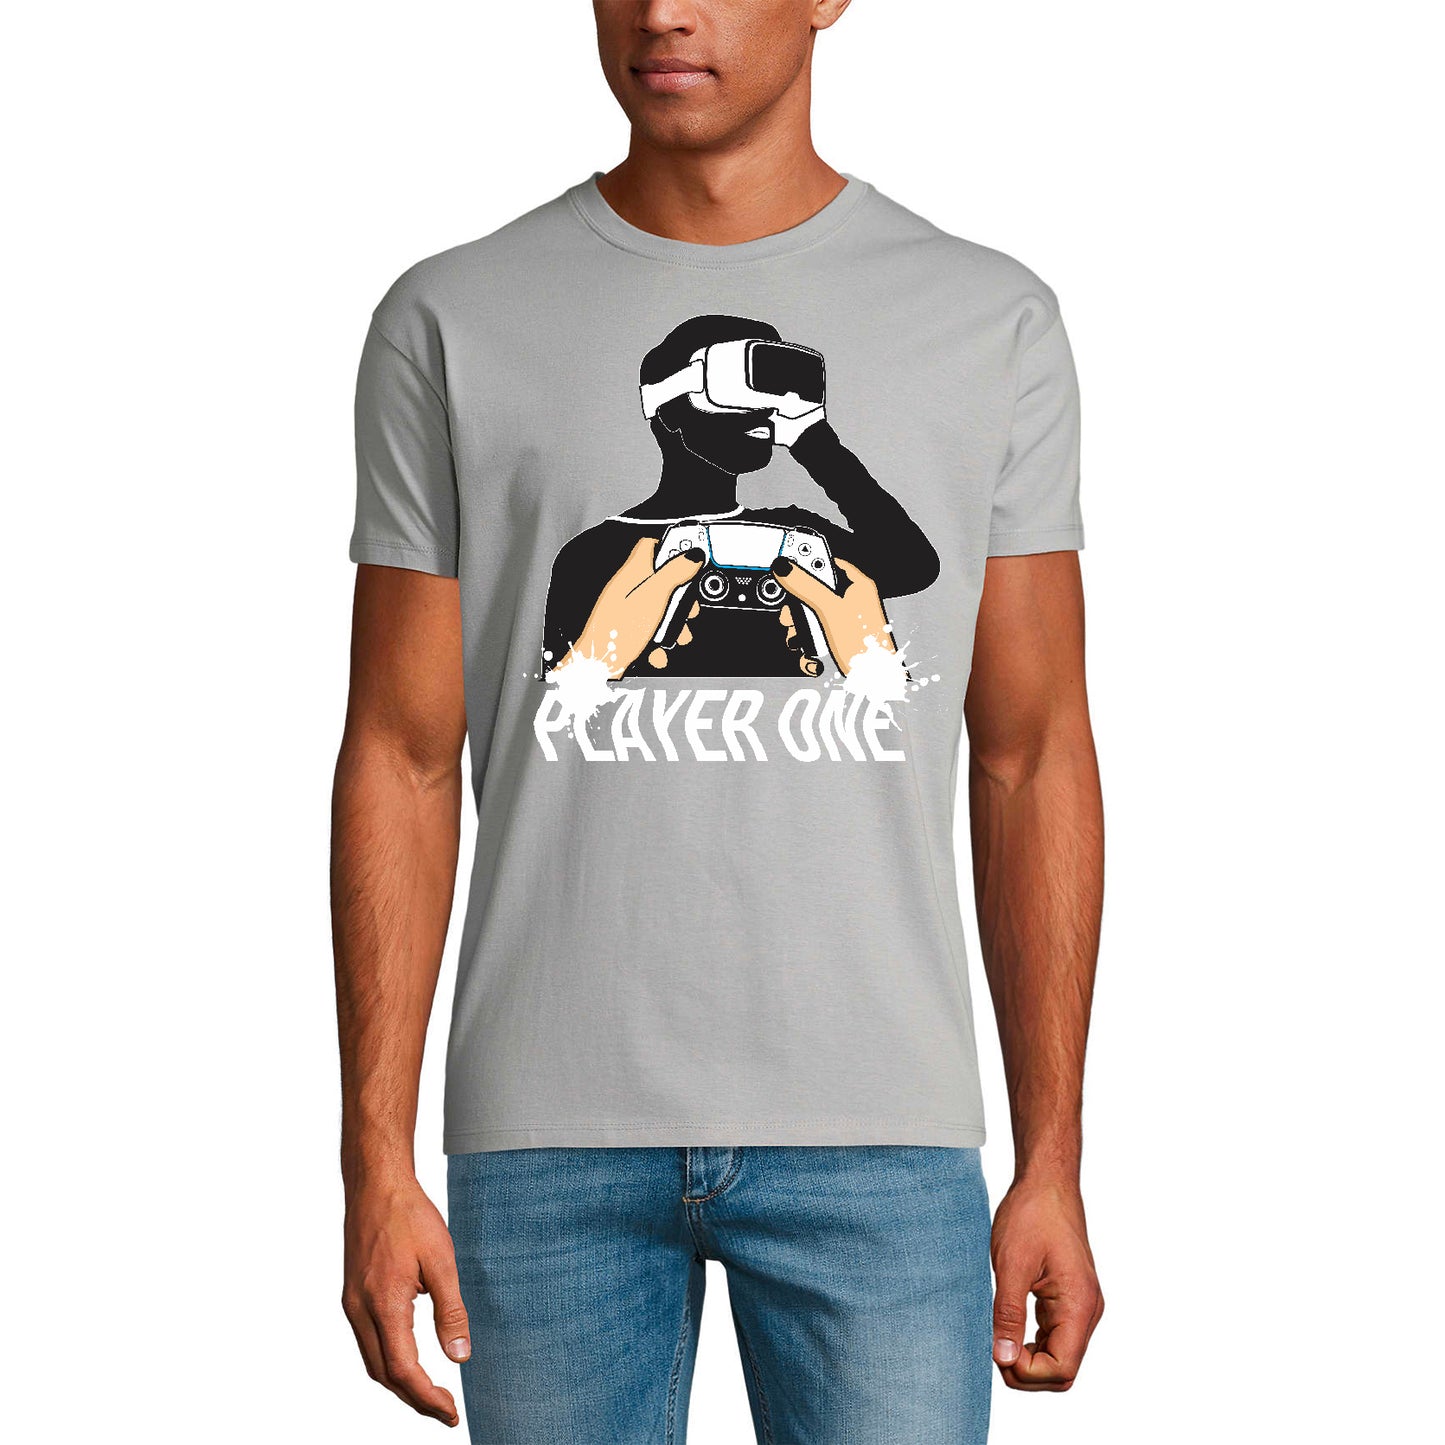 ULTRABASIC Men's Novelty T-Shirt Player One Gamer - Funny VR Gaming Tee Shirt